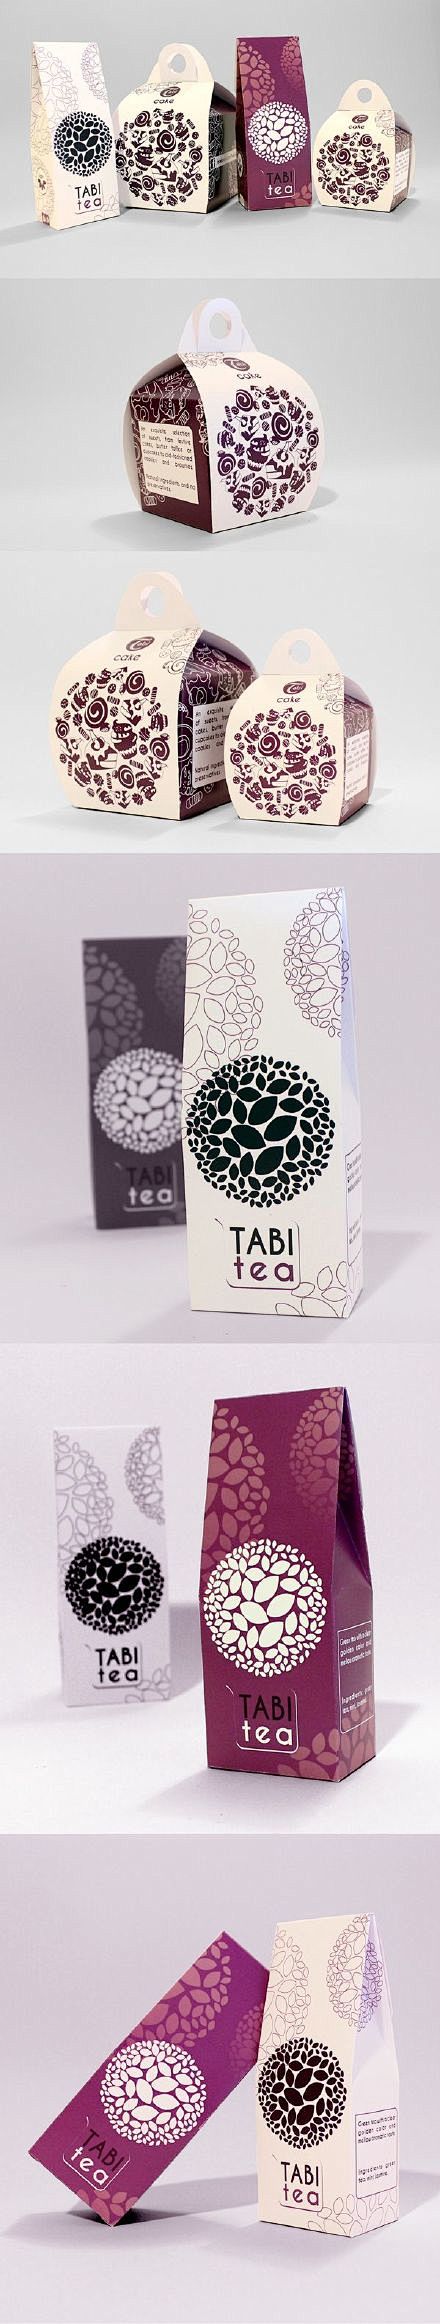 包装设计 · 茶